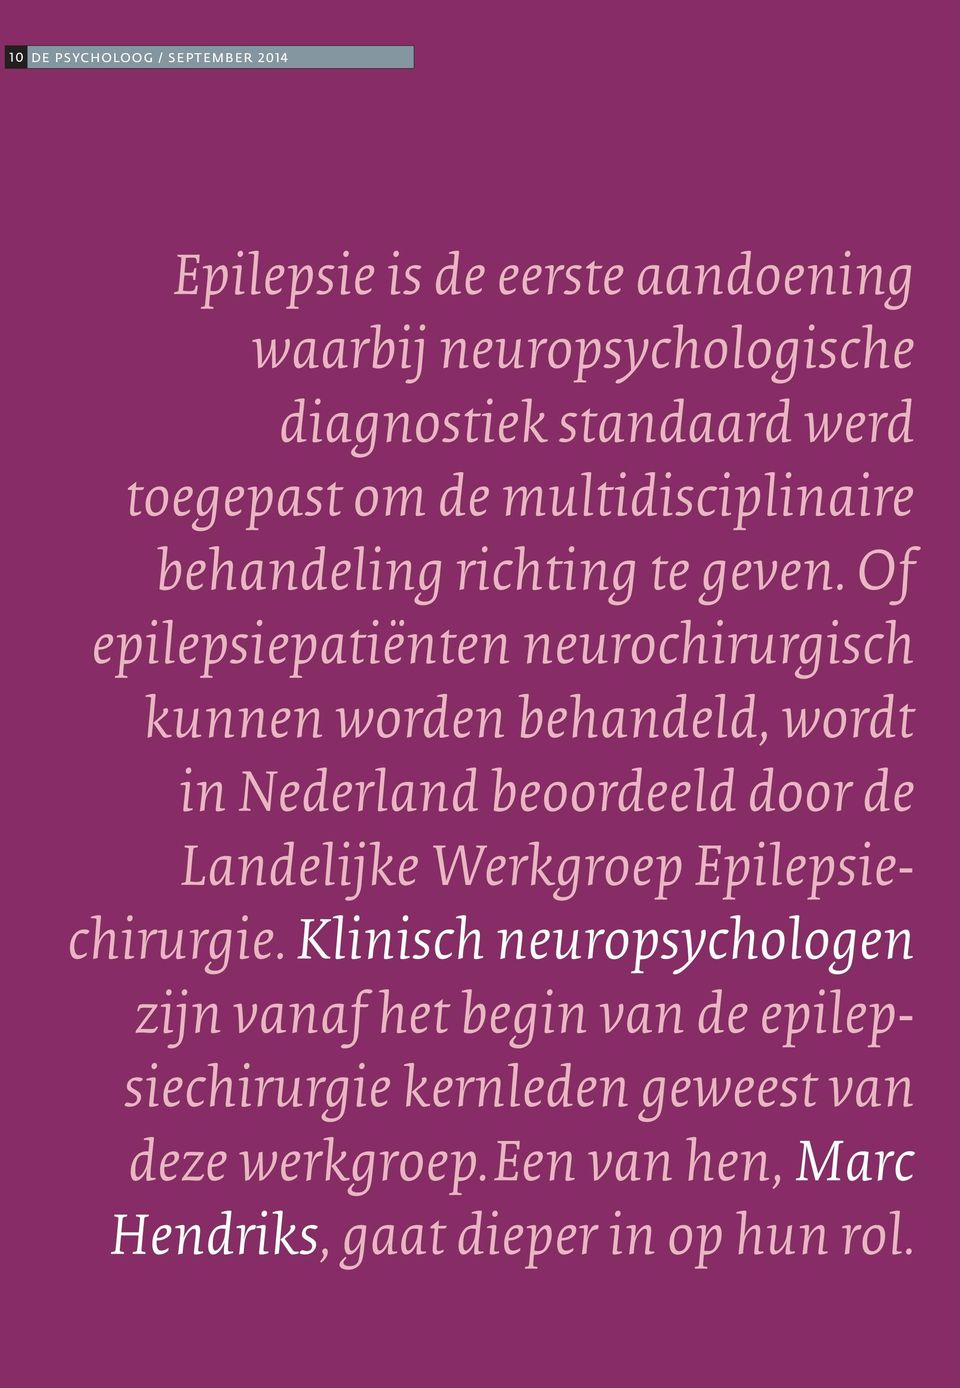 Of epilepsiepatiënten neurochirurgisch kunnen worden behandeld, wordt in Nederland beoordeeld door de Landelijke